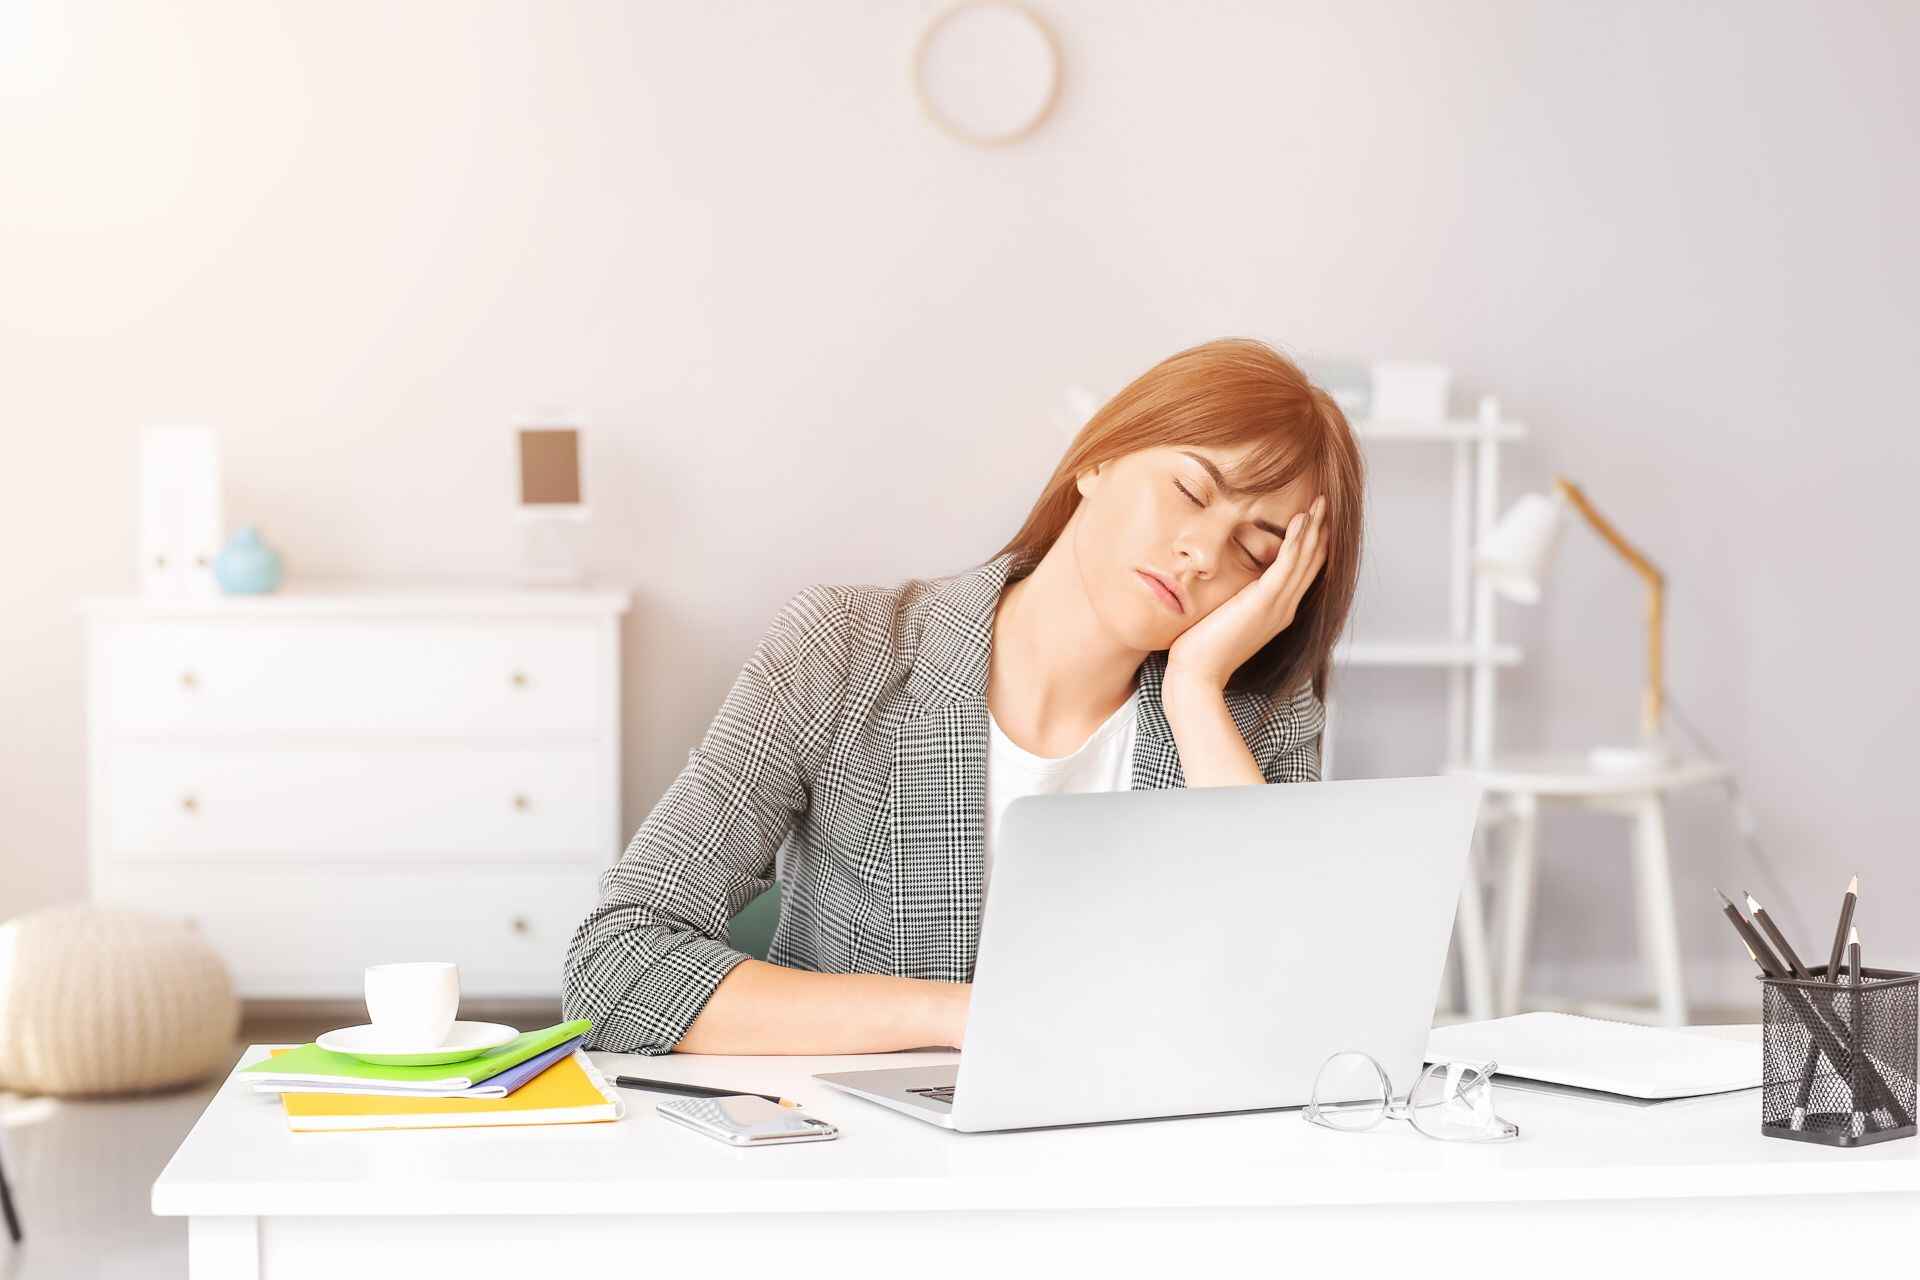 Sedavé zamestnanie: medzi fyzickou a psychickou únavou je podstatný rozdiel